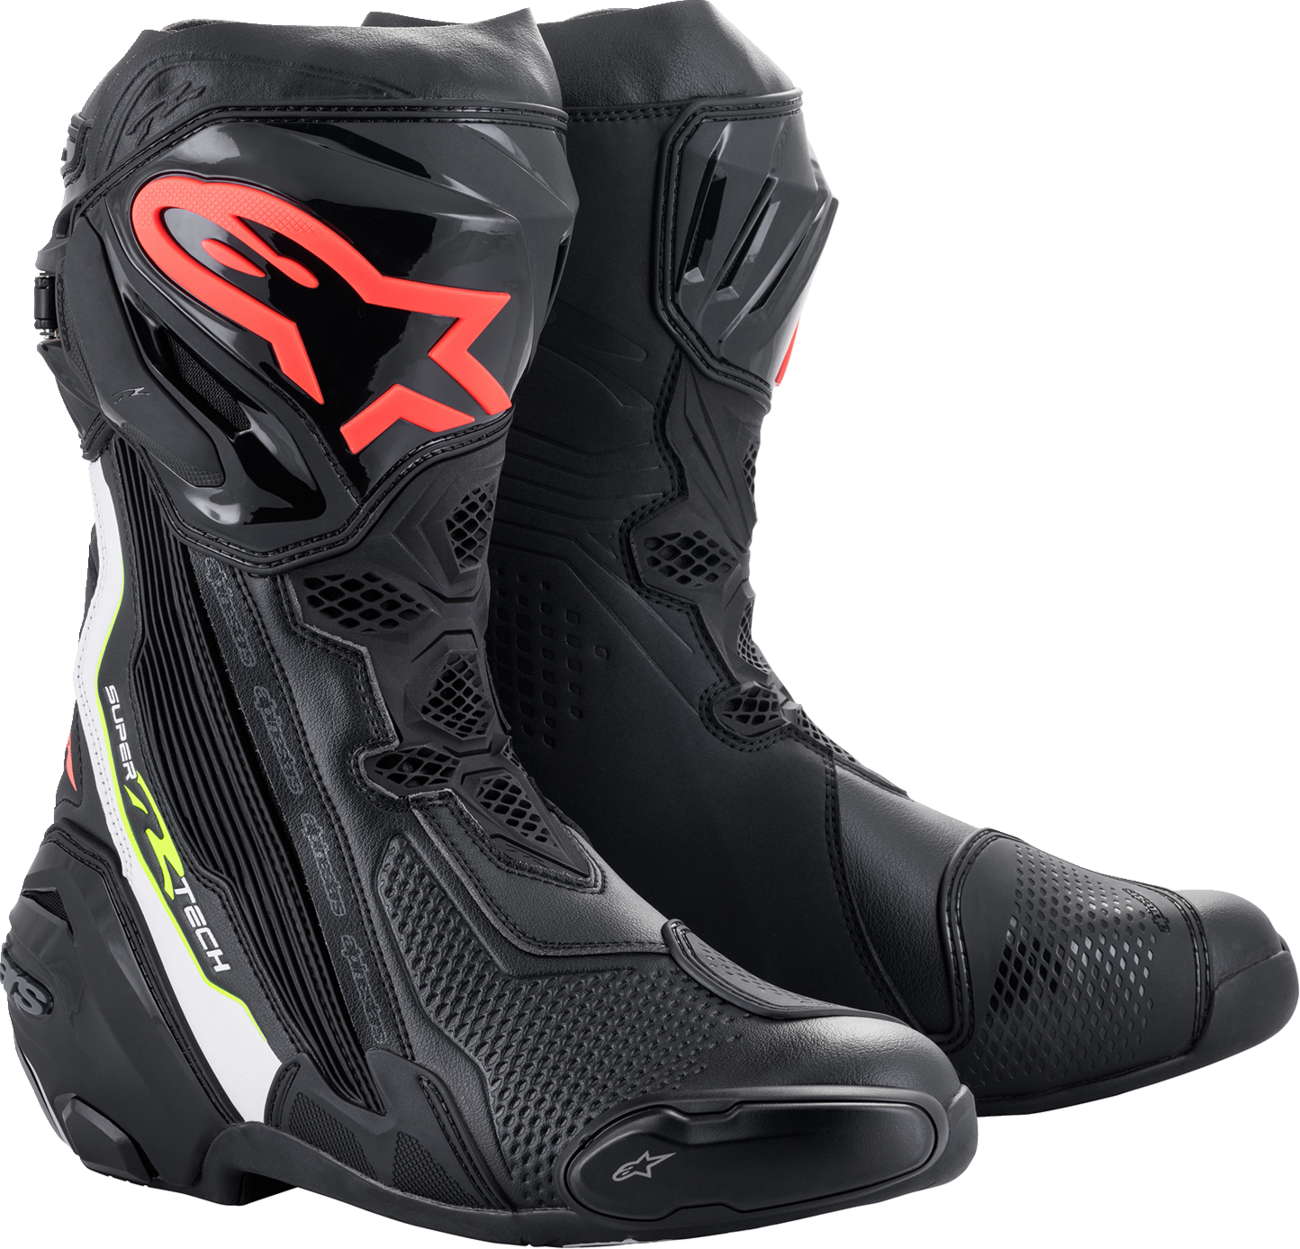 ALPINESTARS Supertech R Boots - Black/Red - US 8 / EU 42 2220021-1236-42